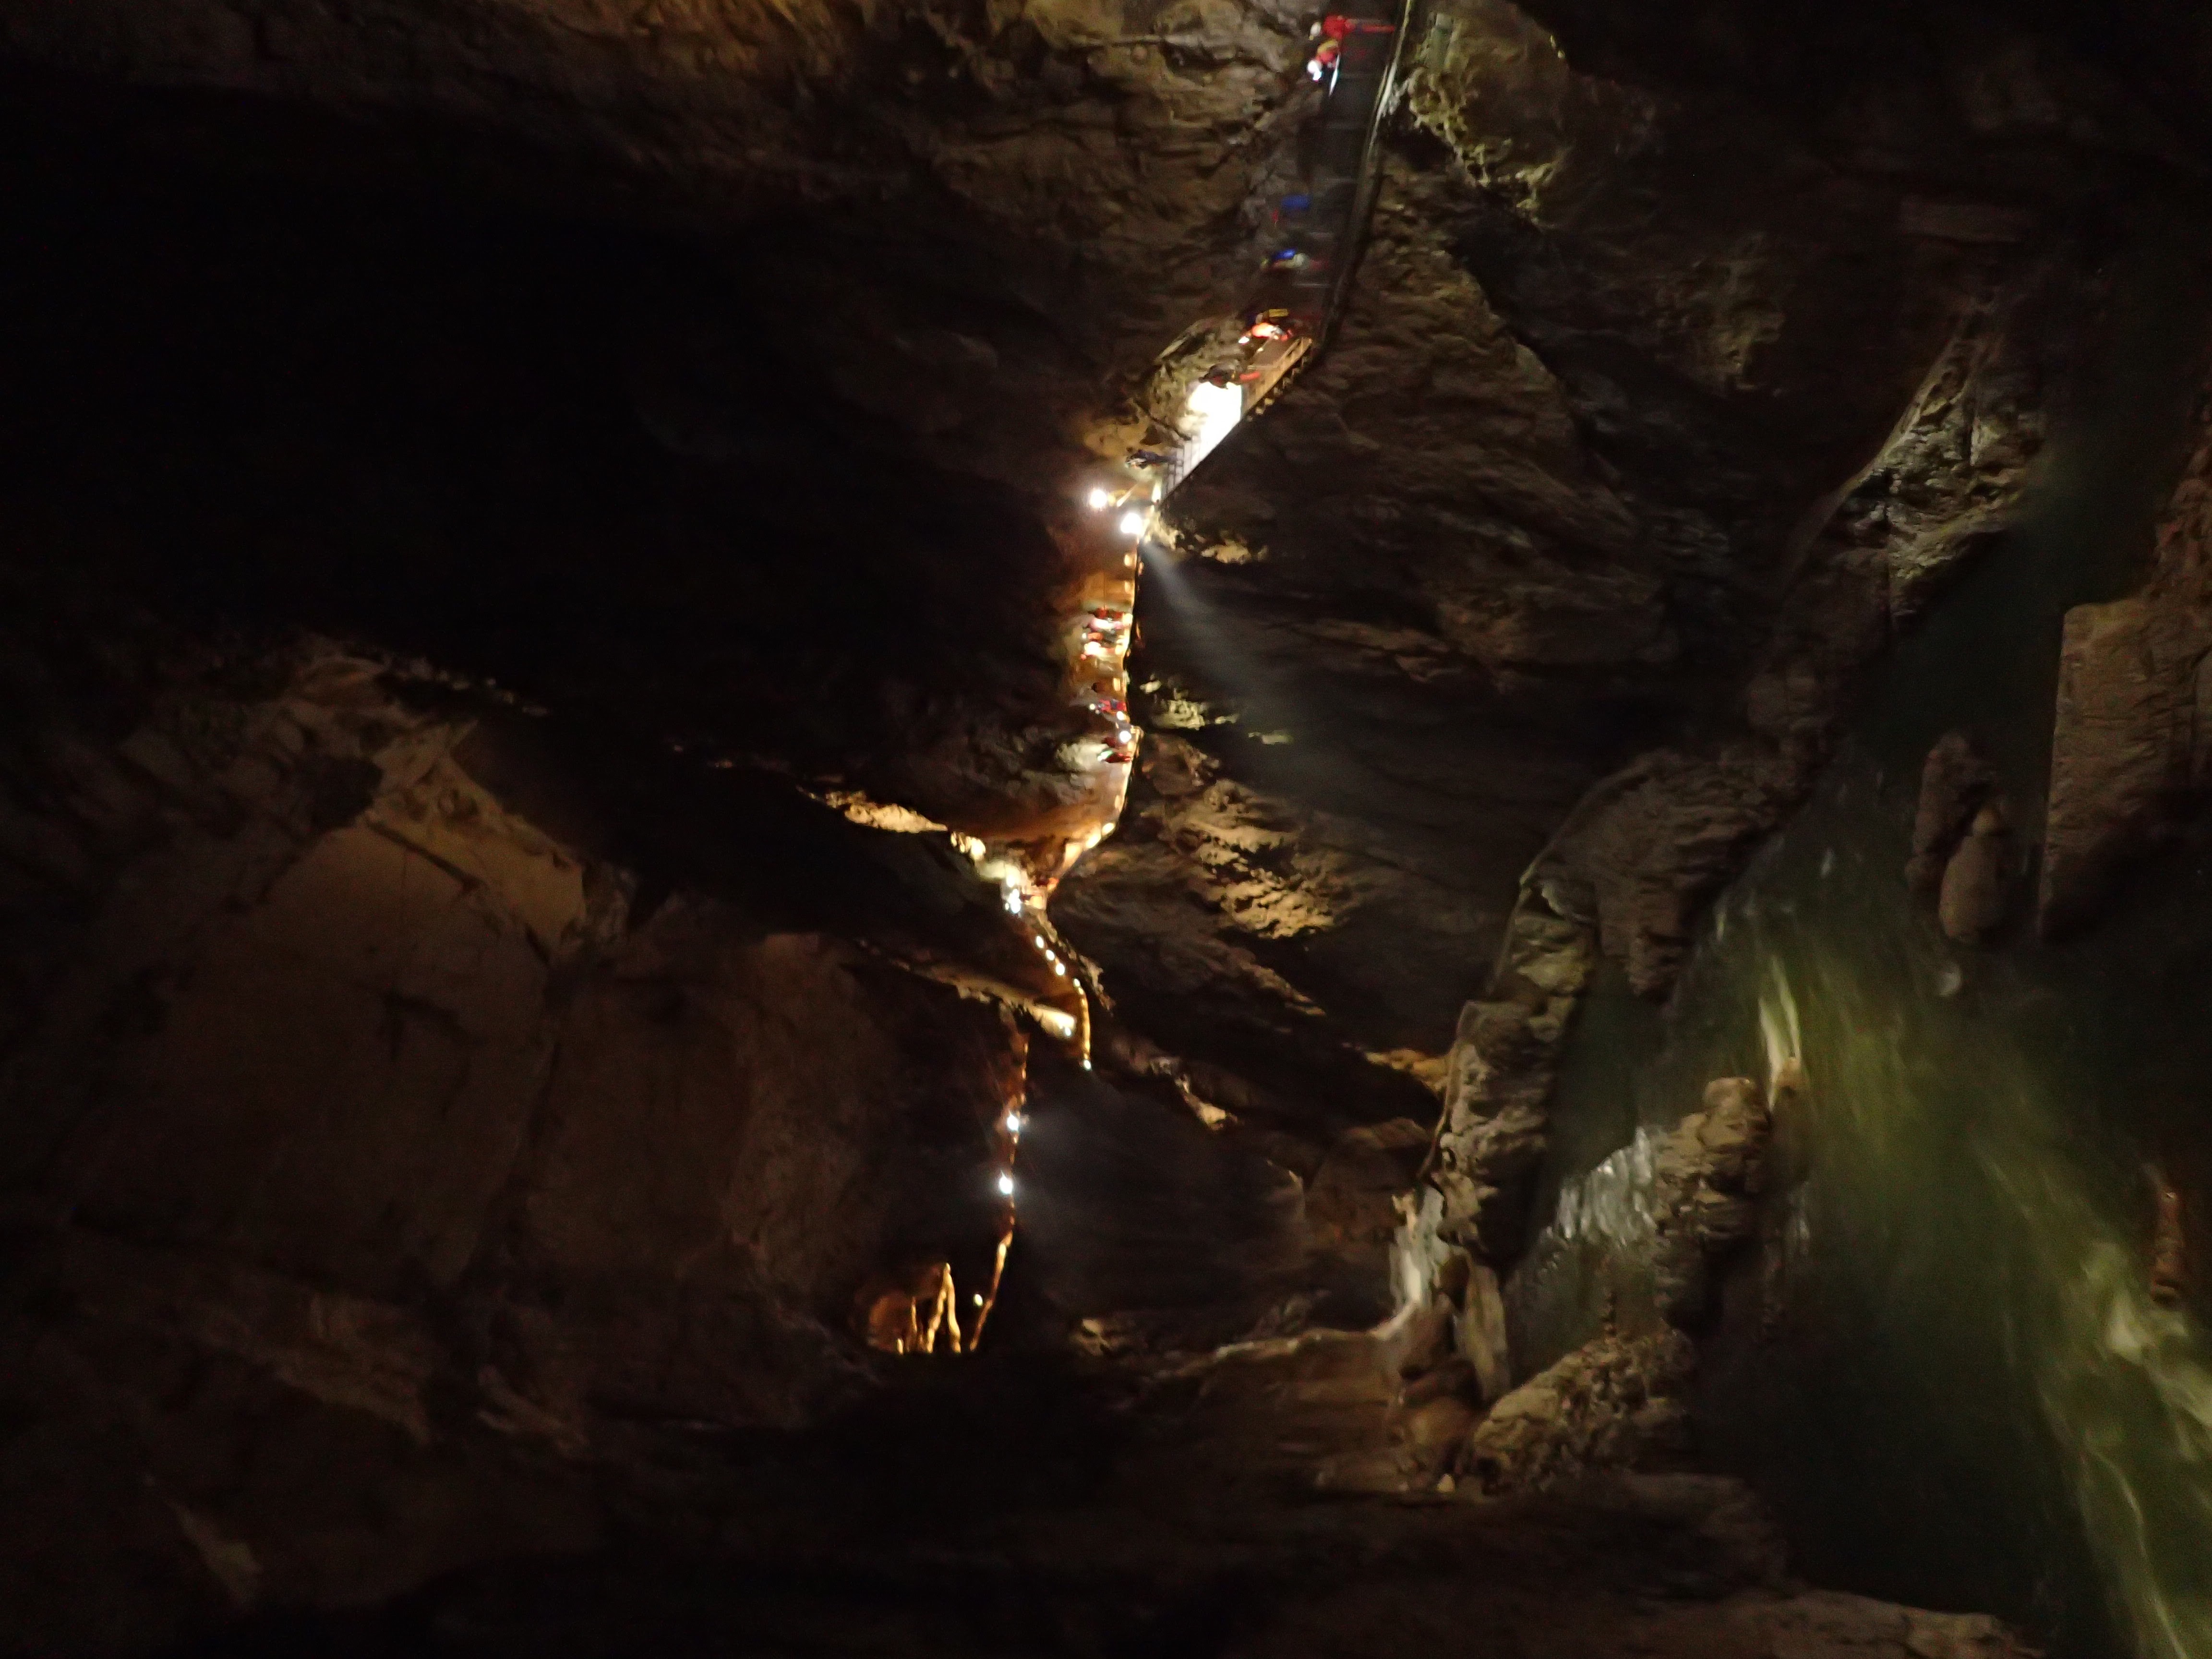 a földalatti kanyonban befelé (Spáda Ágnes képe)